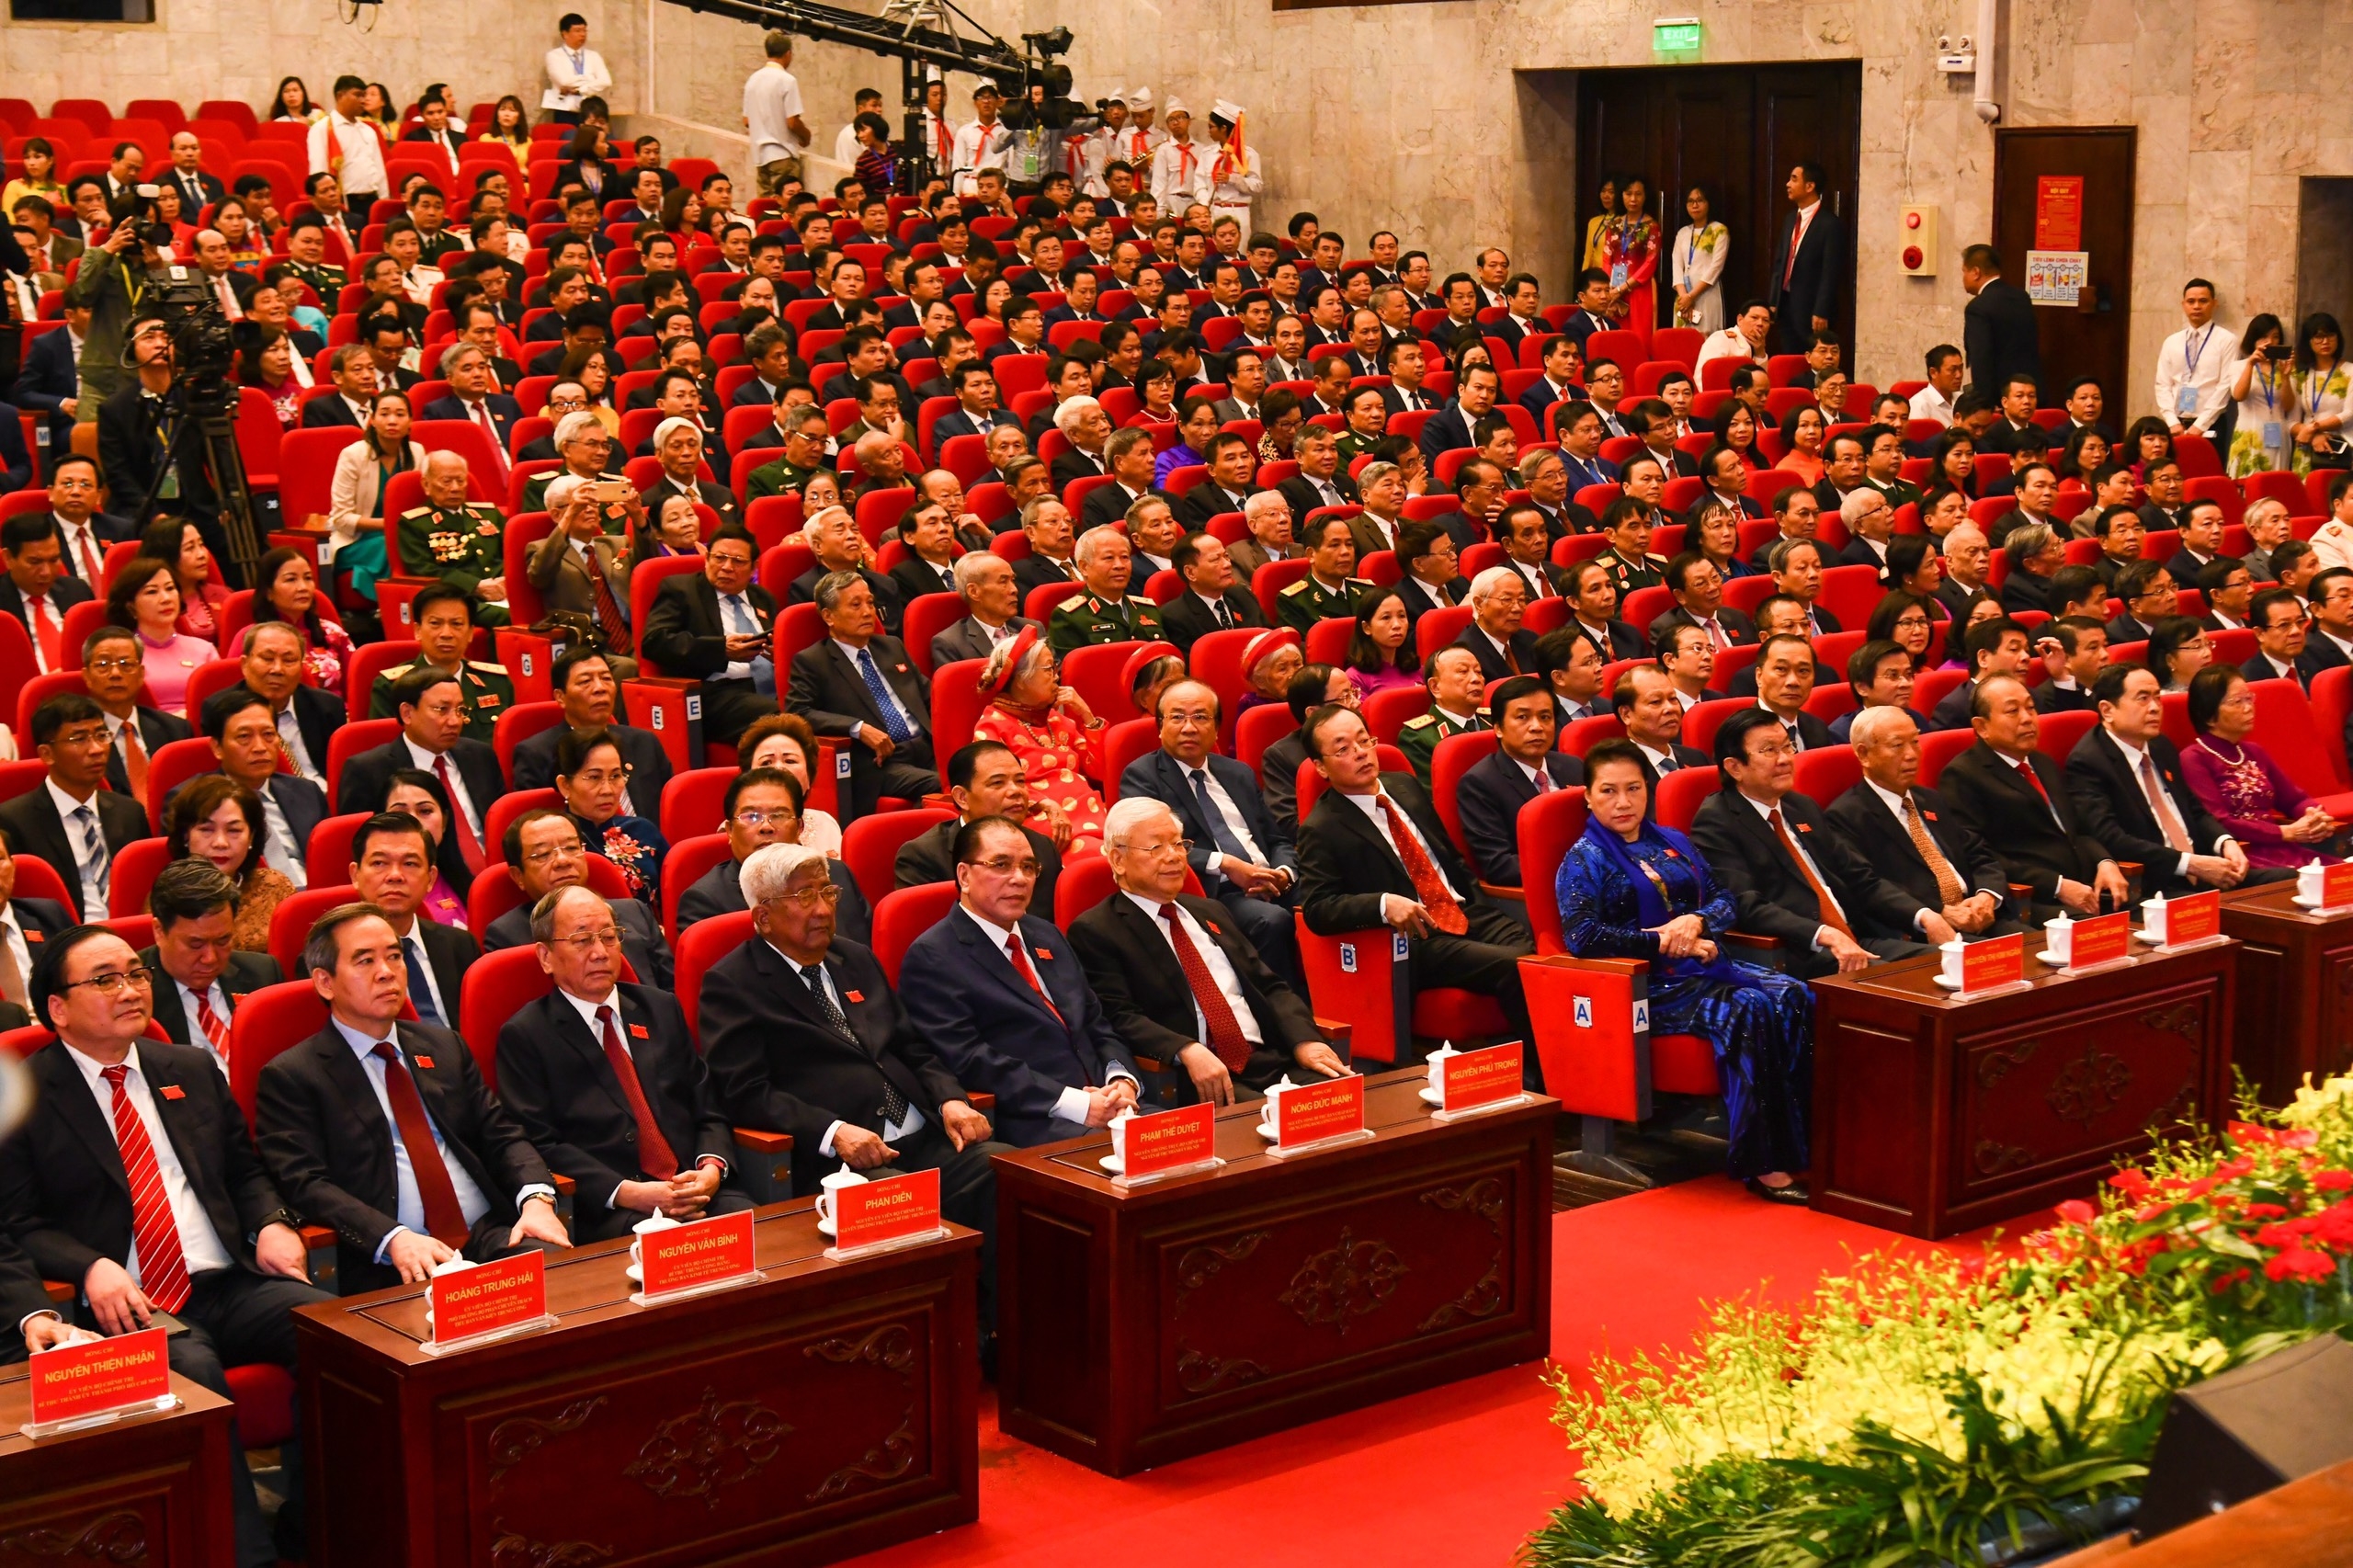 Trực tiếp: Khai mạc trọng thể Đại hội đại biểu lần thứ XVII Đảng bộ thành phố Hà Nội